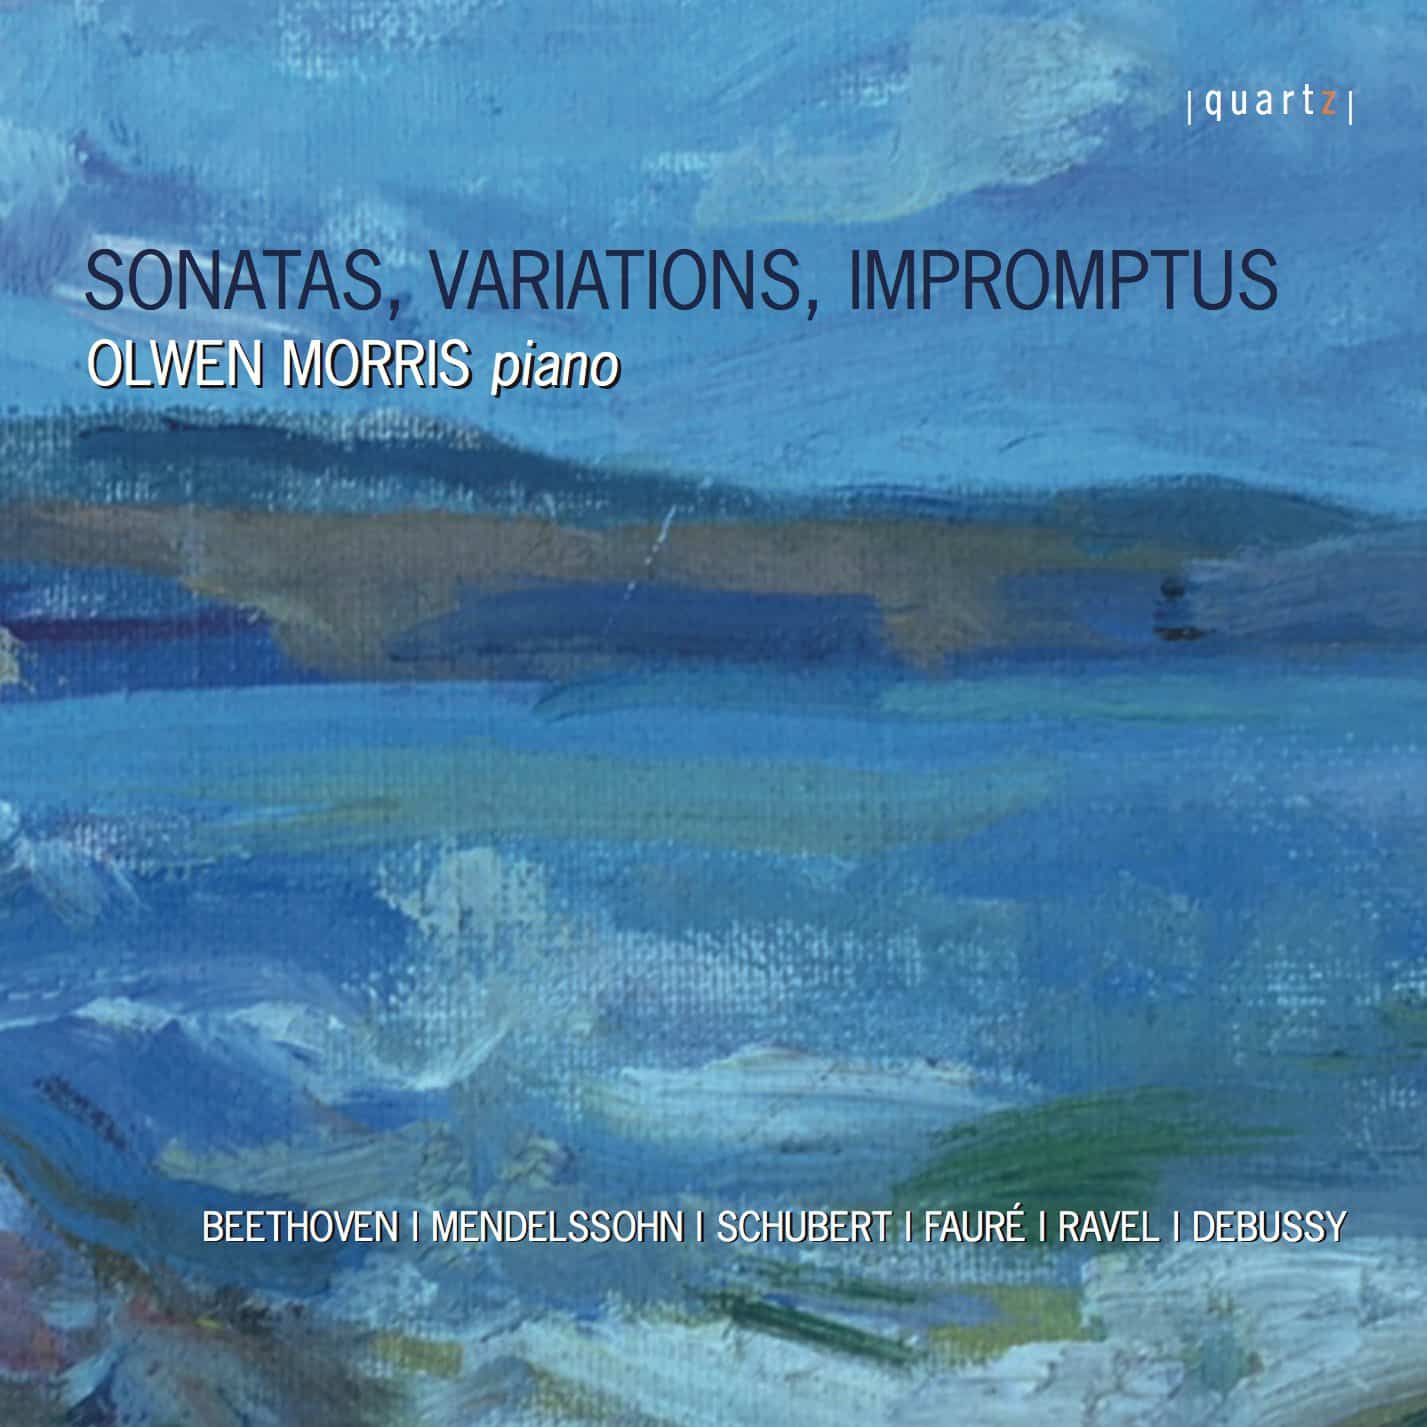 Sonatas, Variations, Impromptus